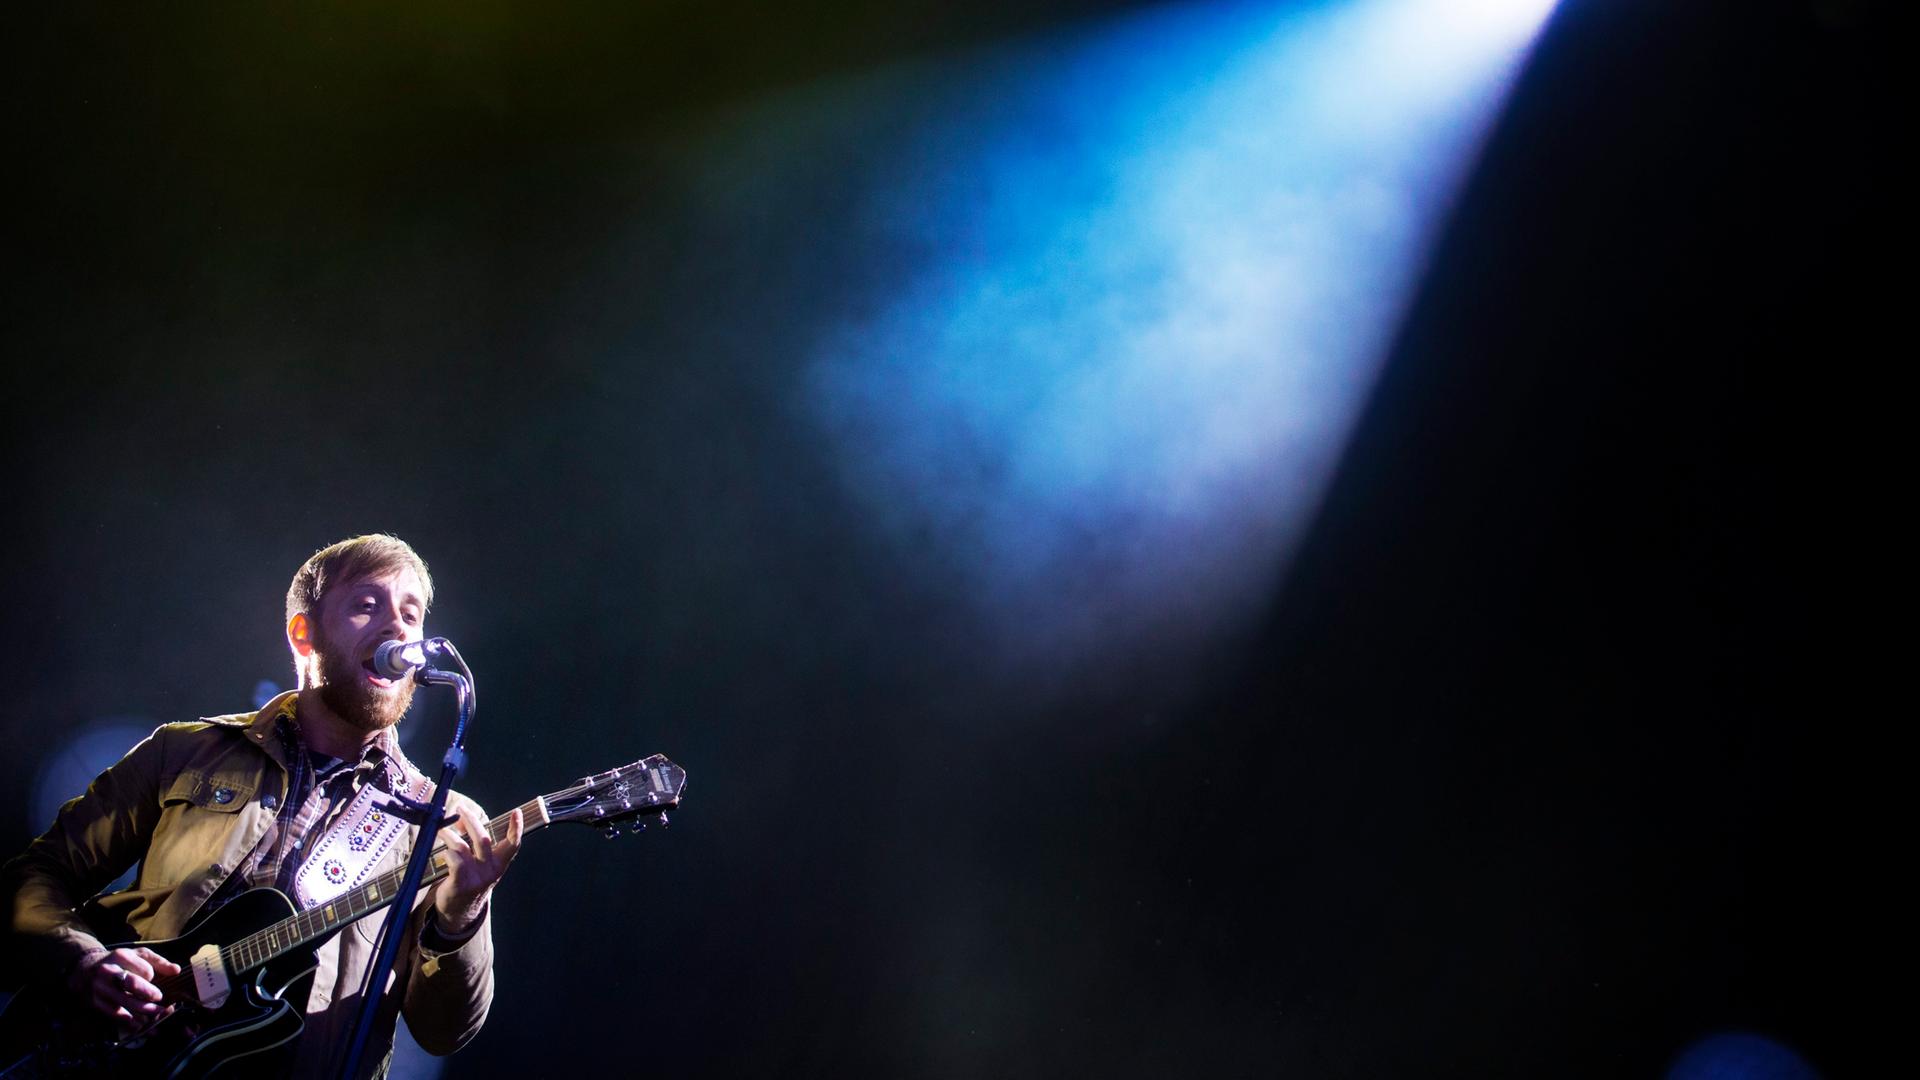 Dan Auerbach steht mit Gitarre  auf einer Bühne, die ein einziges Schlaglicht auf ihn wirft.